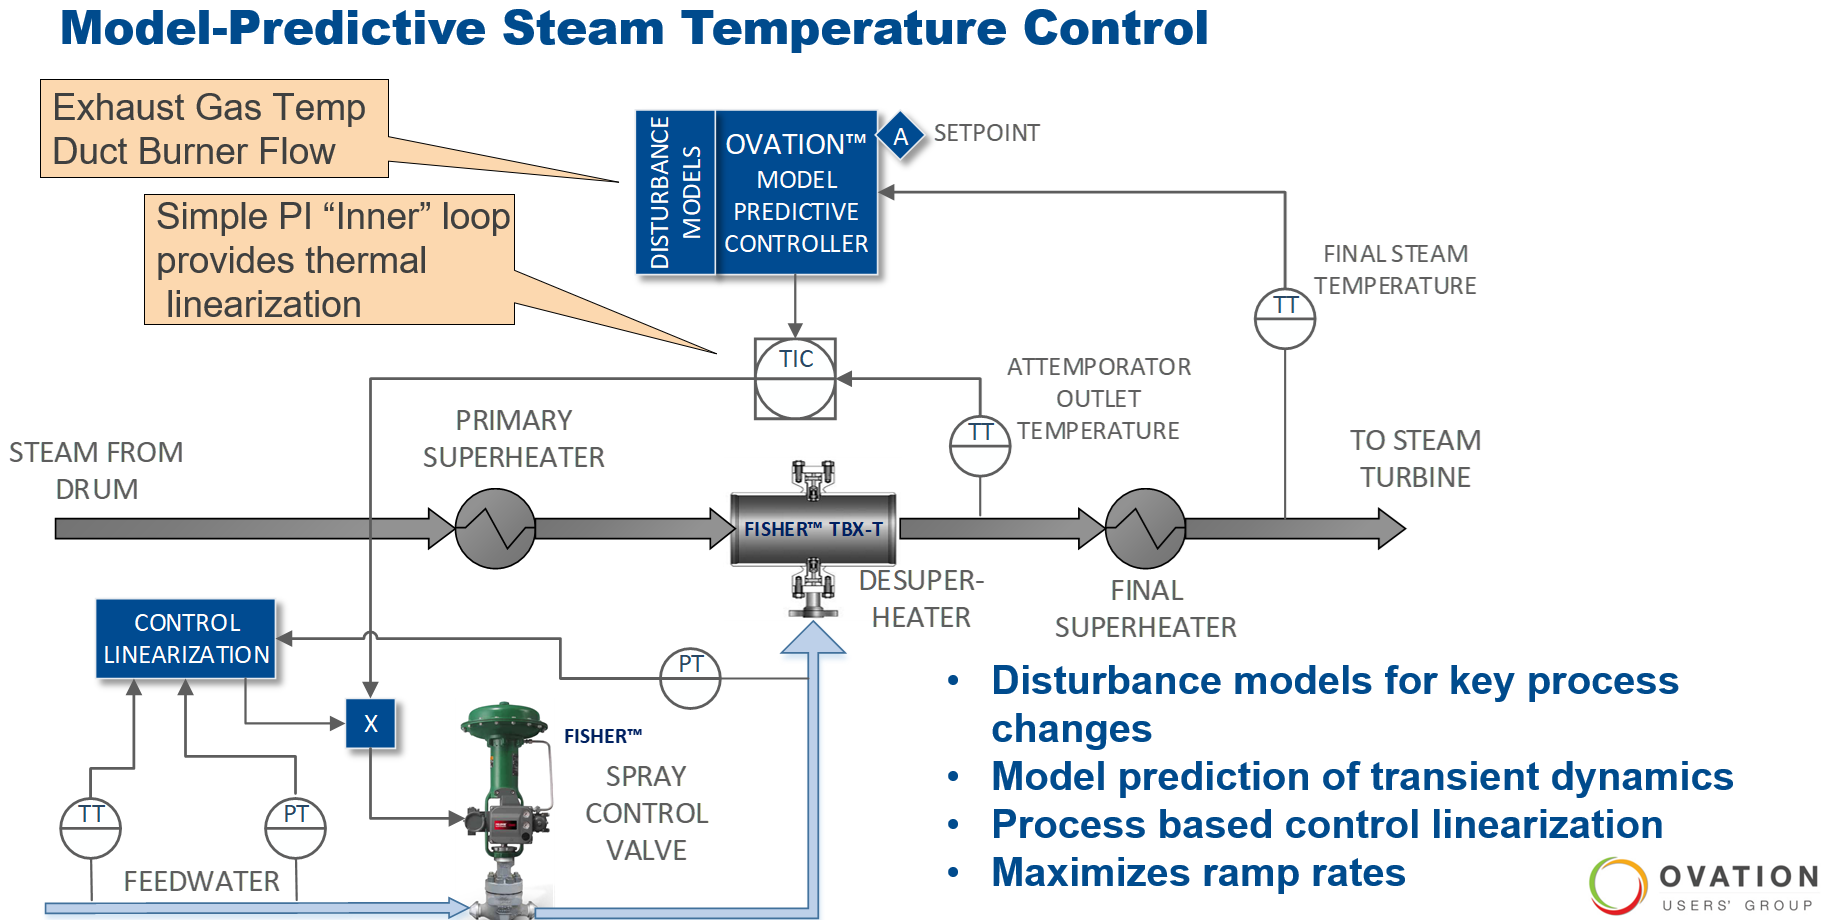 Model-Predictive Steam Temperature Control